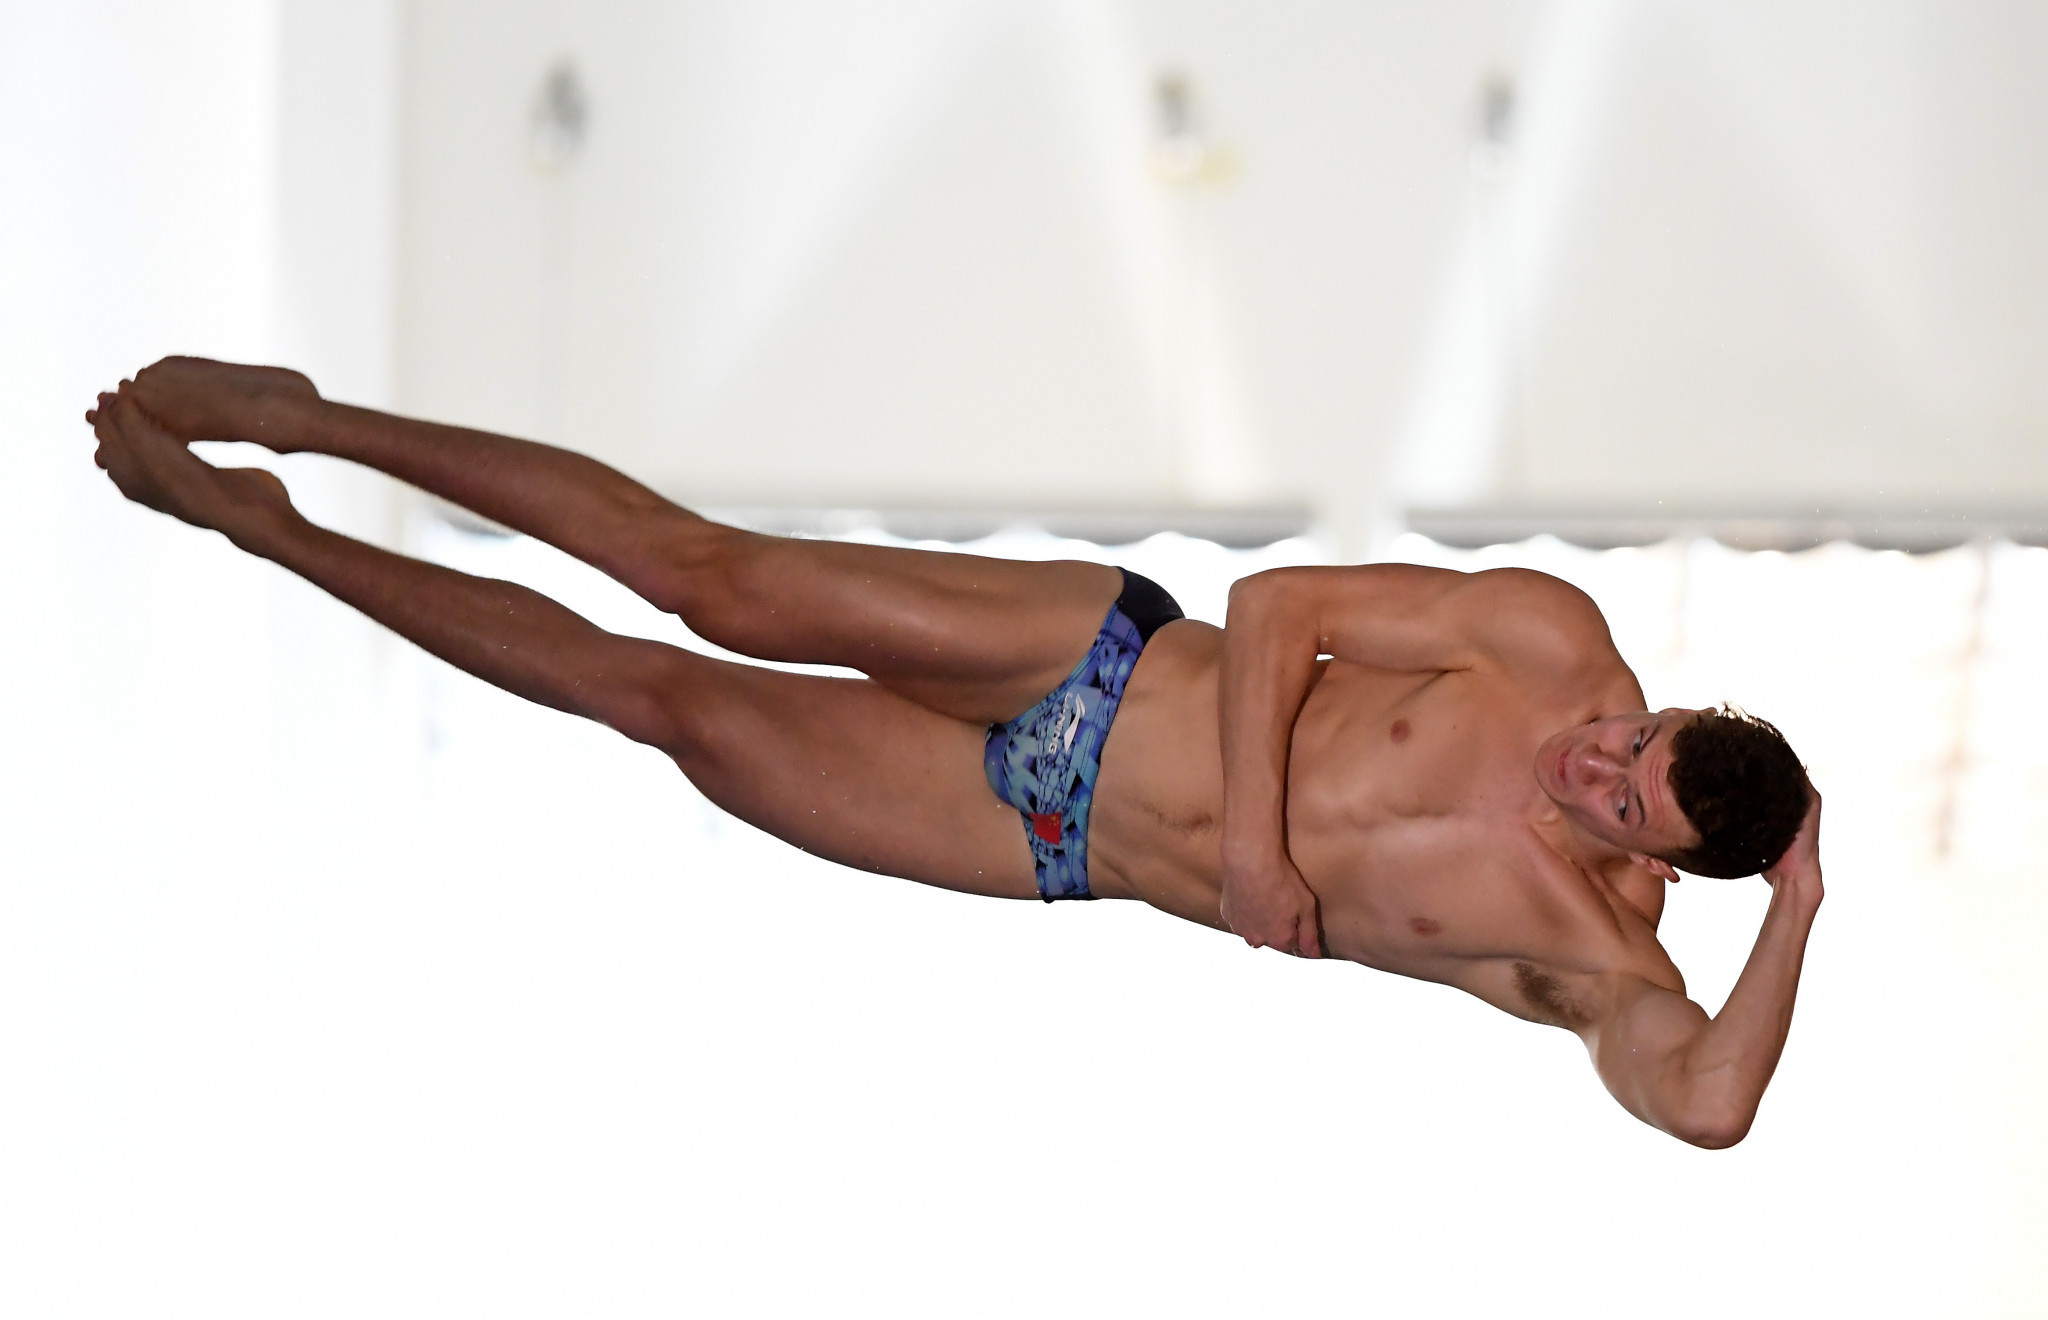 Noah Williams won the men's 10m platform title for Britain ©Getty Images